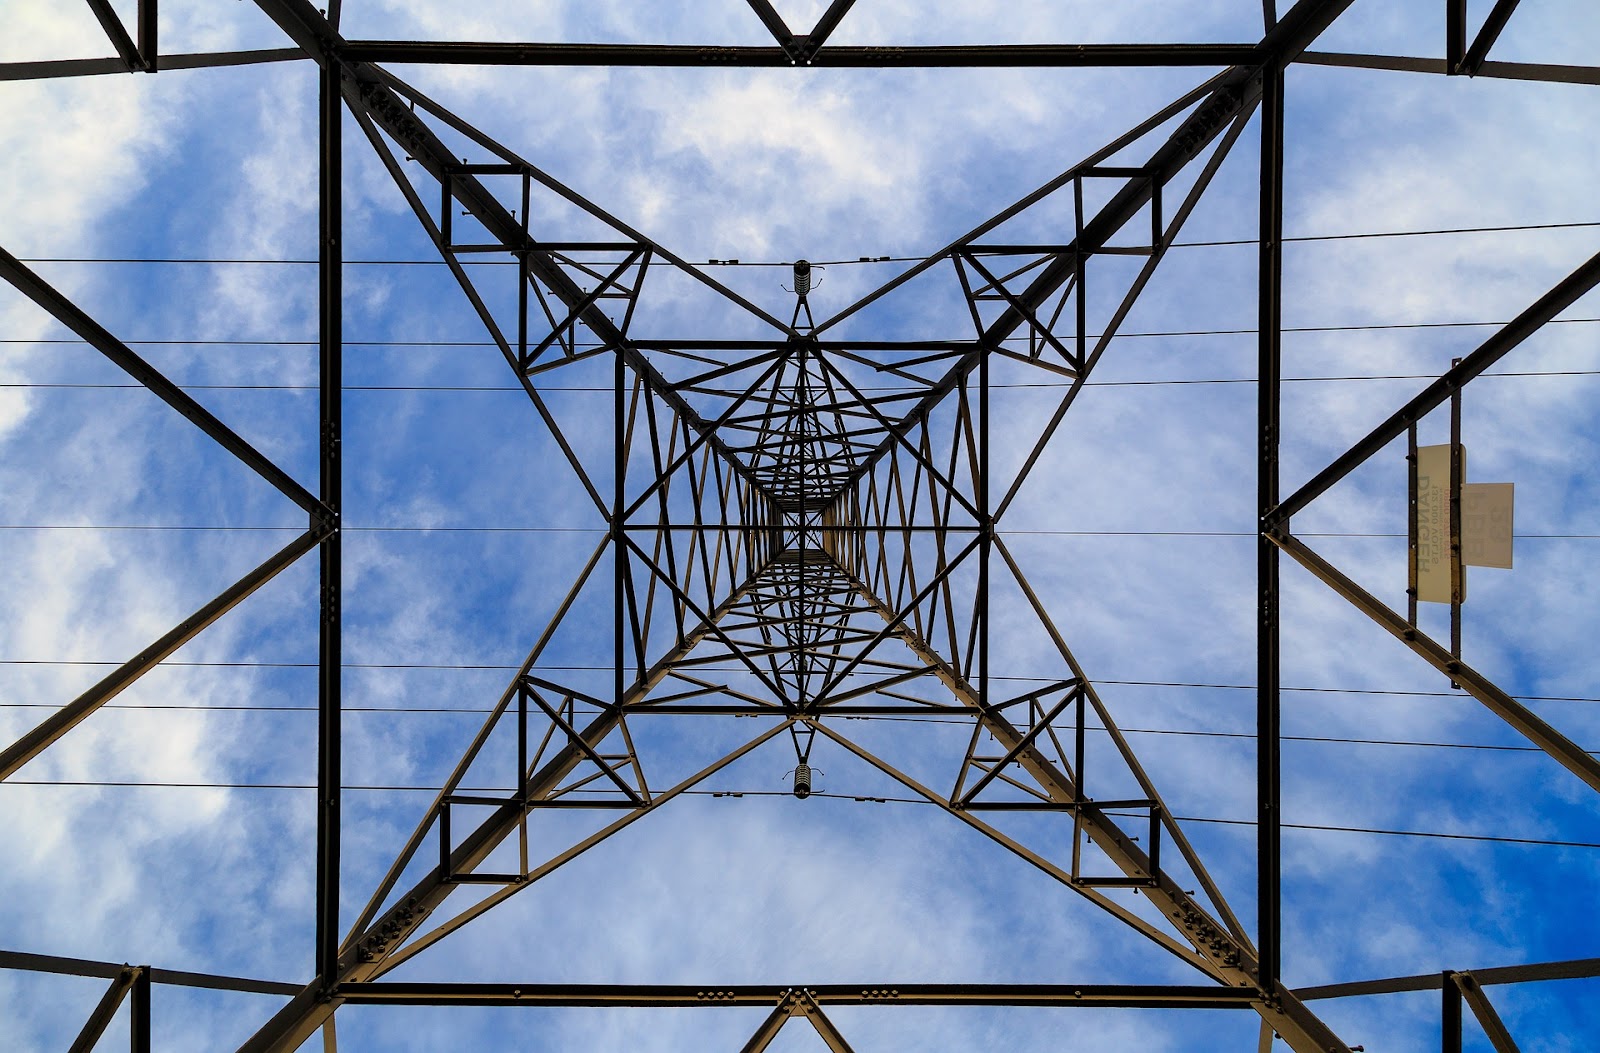 Power pylon. Image used courtesy of Pixabay